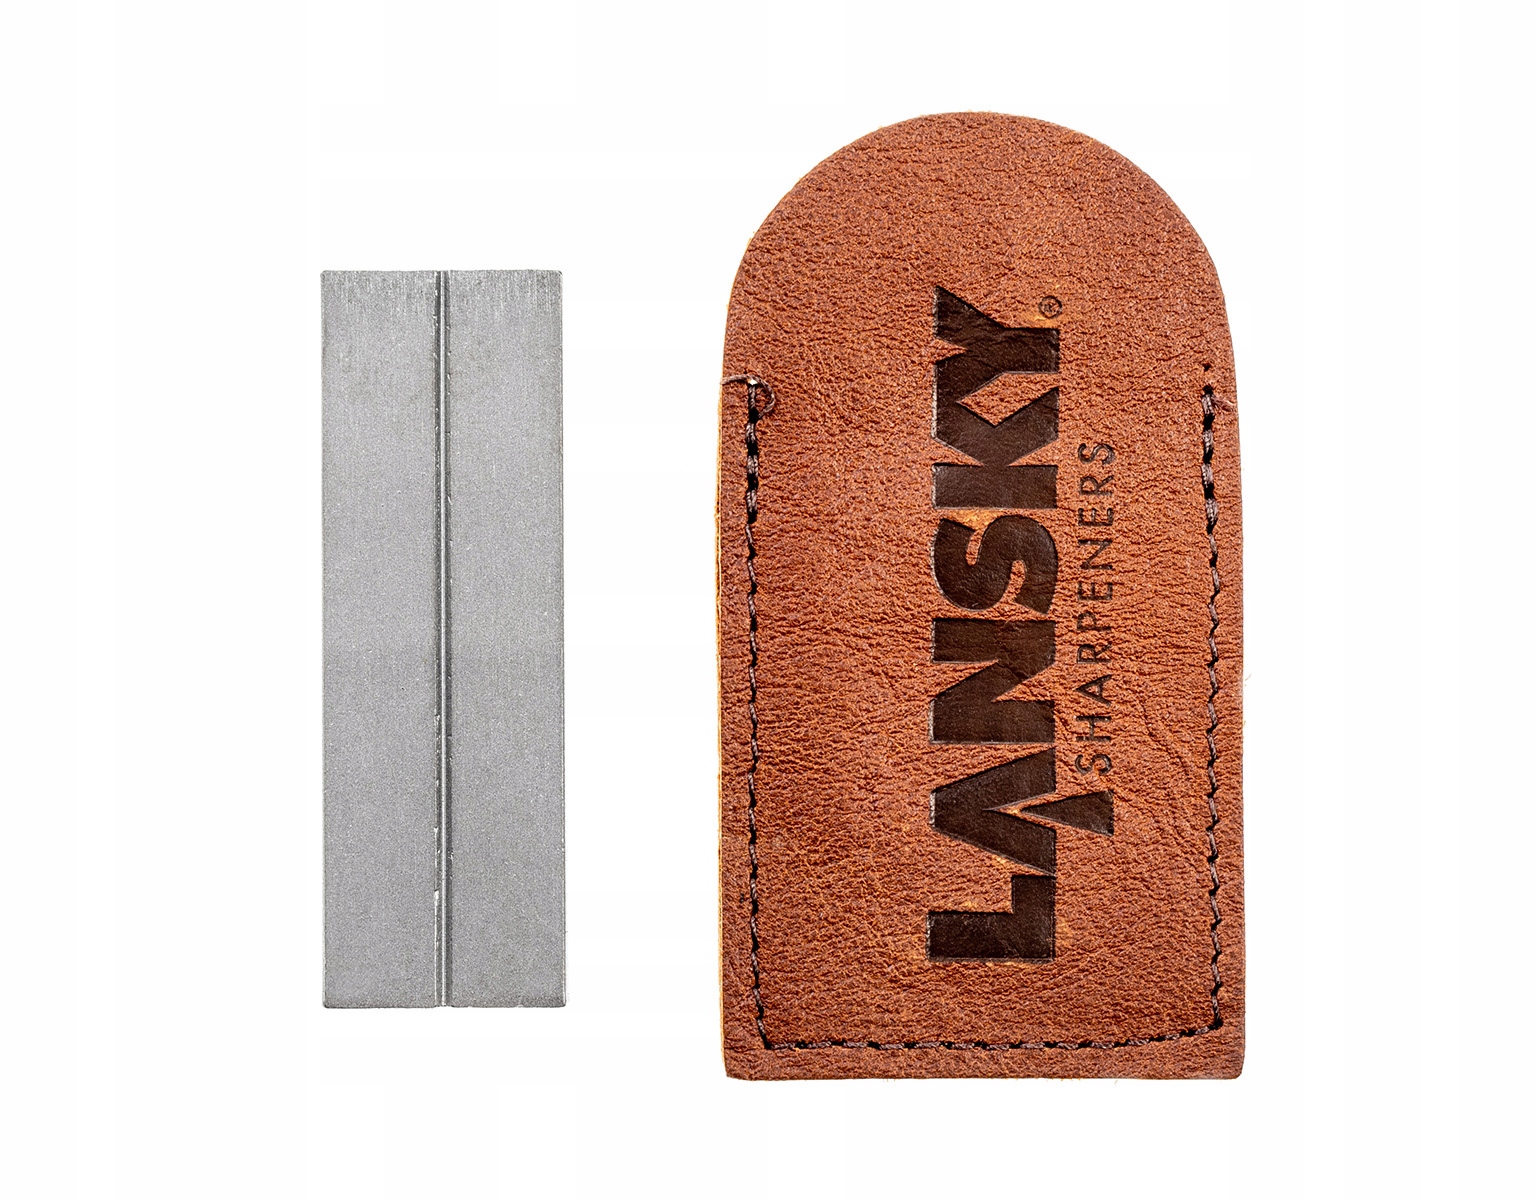 Lansky Diamond Pocket Stone Sharpener LDPST